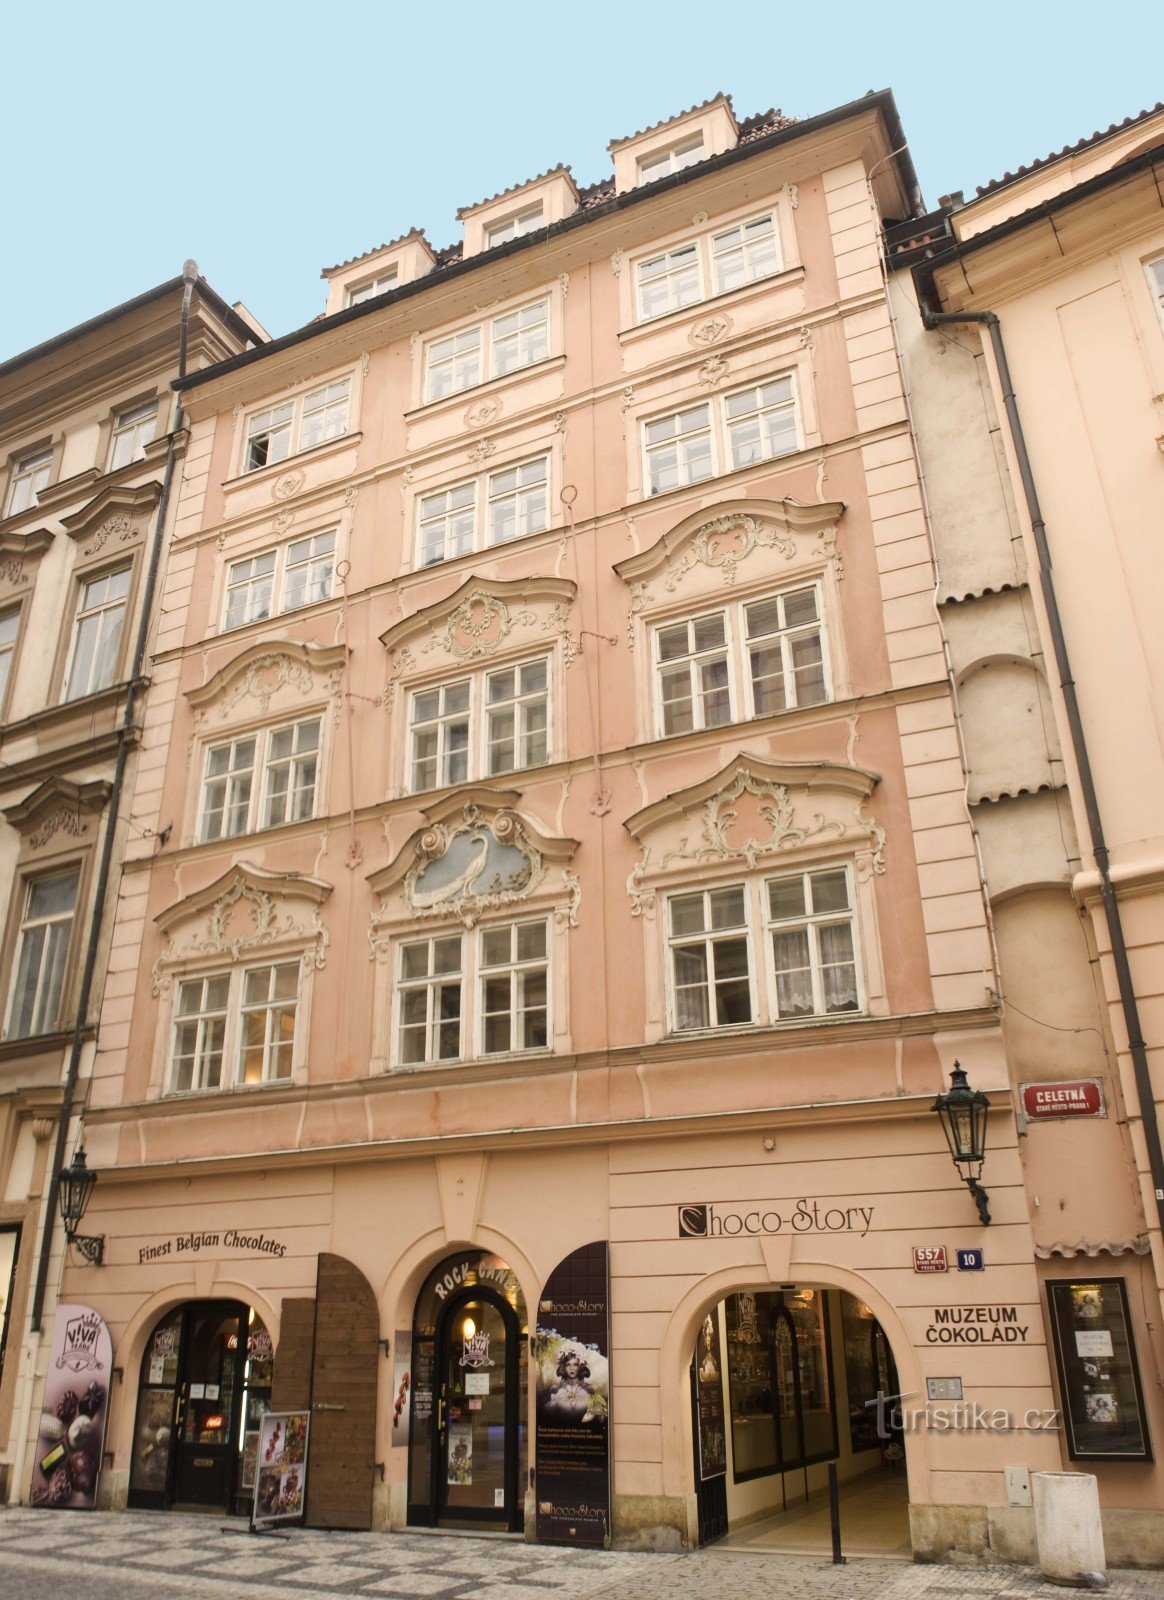 Musée Choco-Story - une expérience chocolatée au centre de Prague